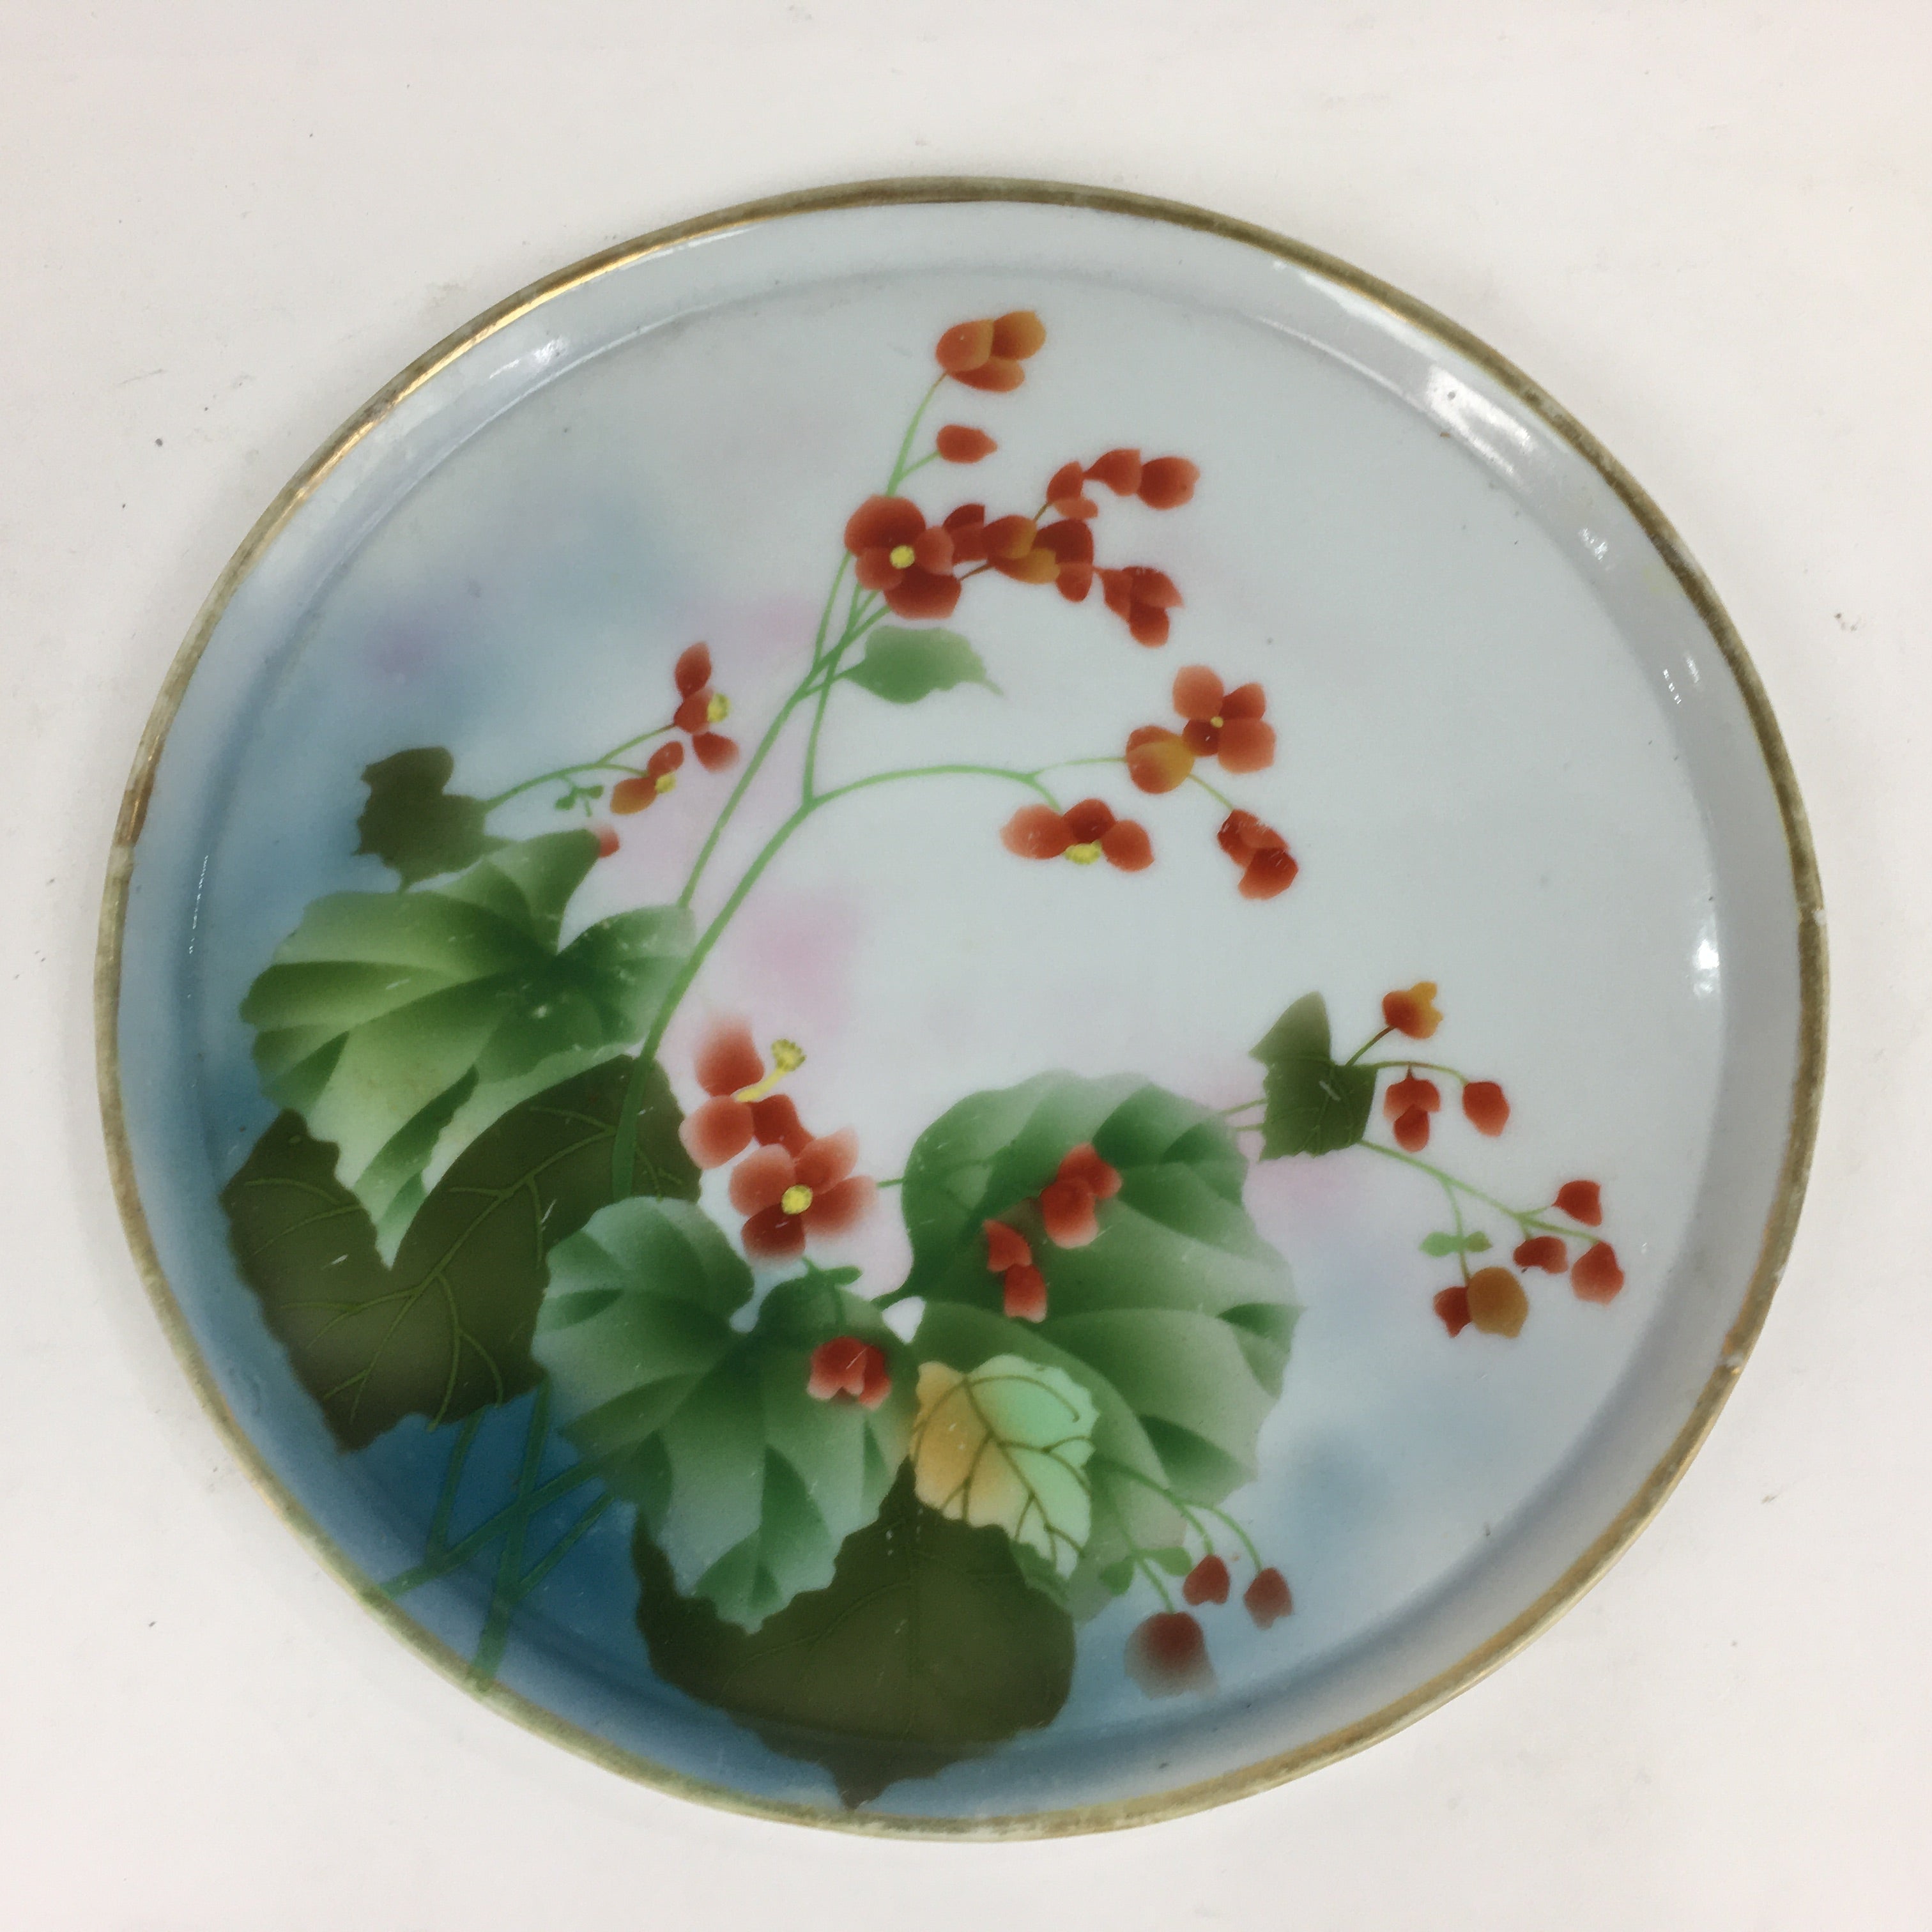 Japanese Porcelain Cake Plate Vtg Round Shape Pottery Tray Red Flower Design PP7